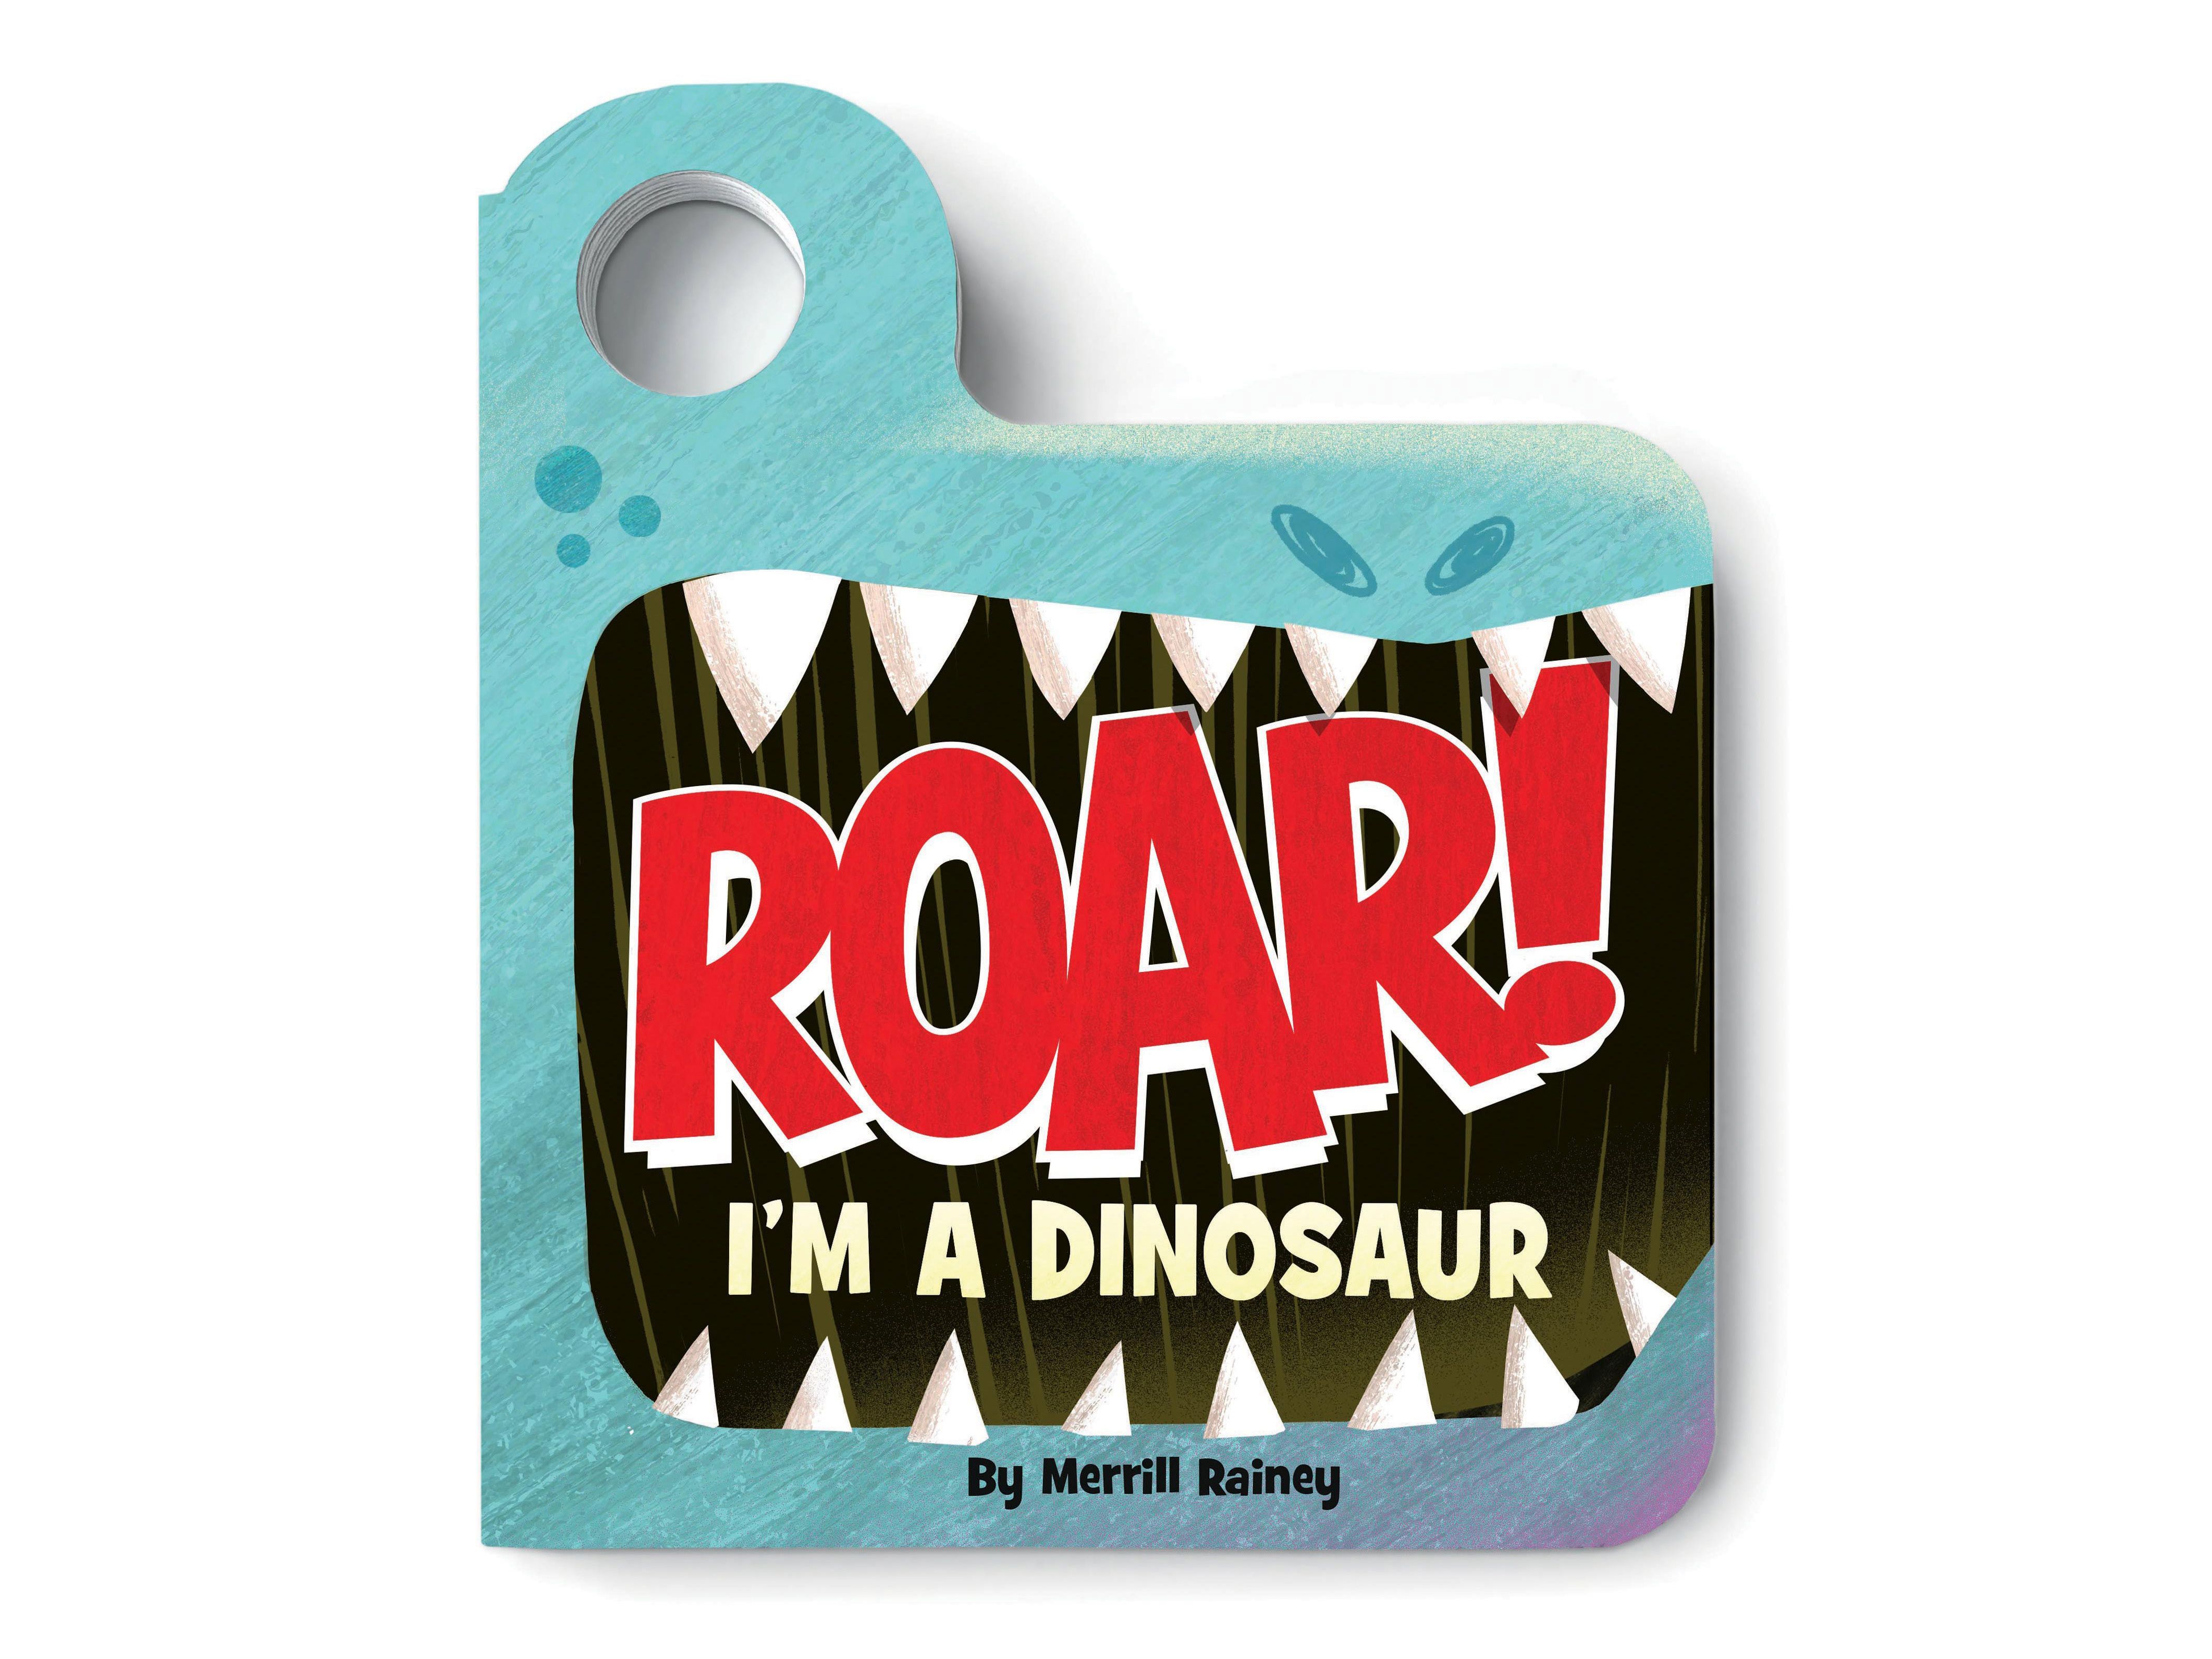 Roar! I’m a Dinosaur